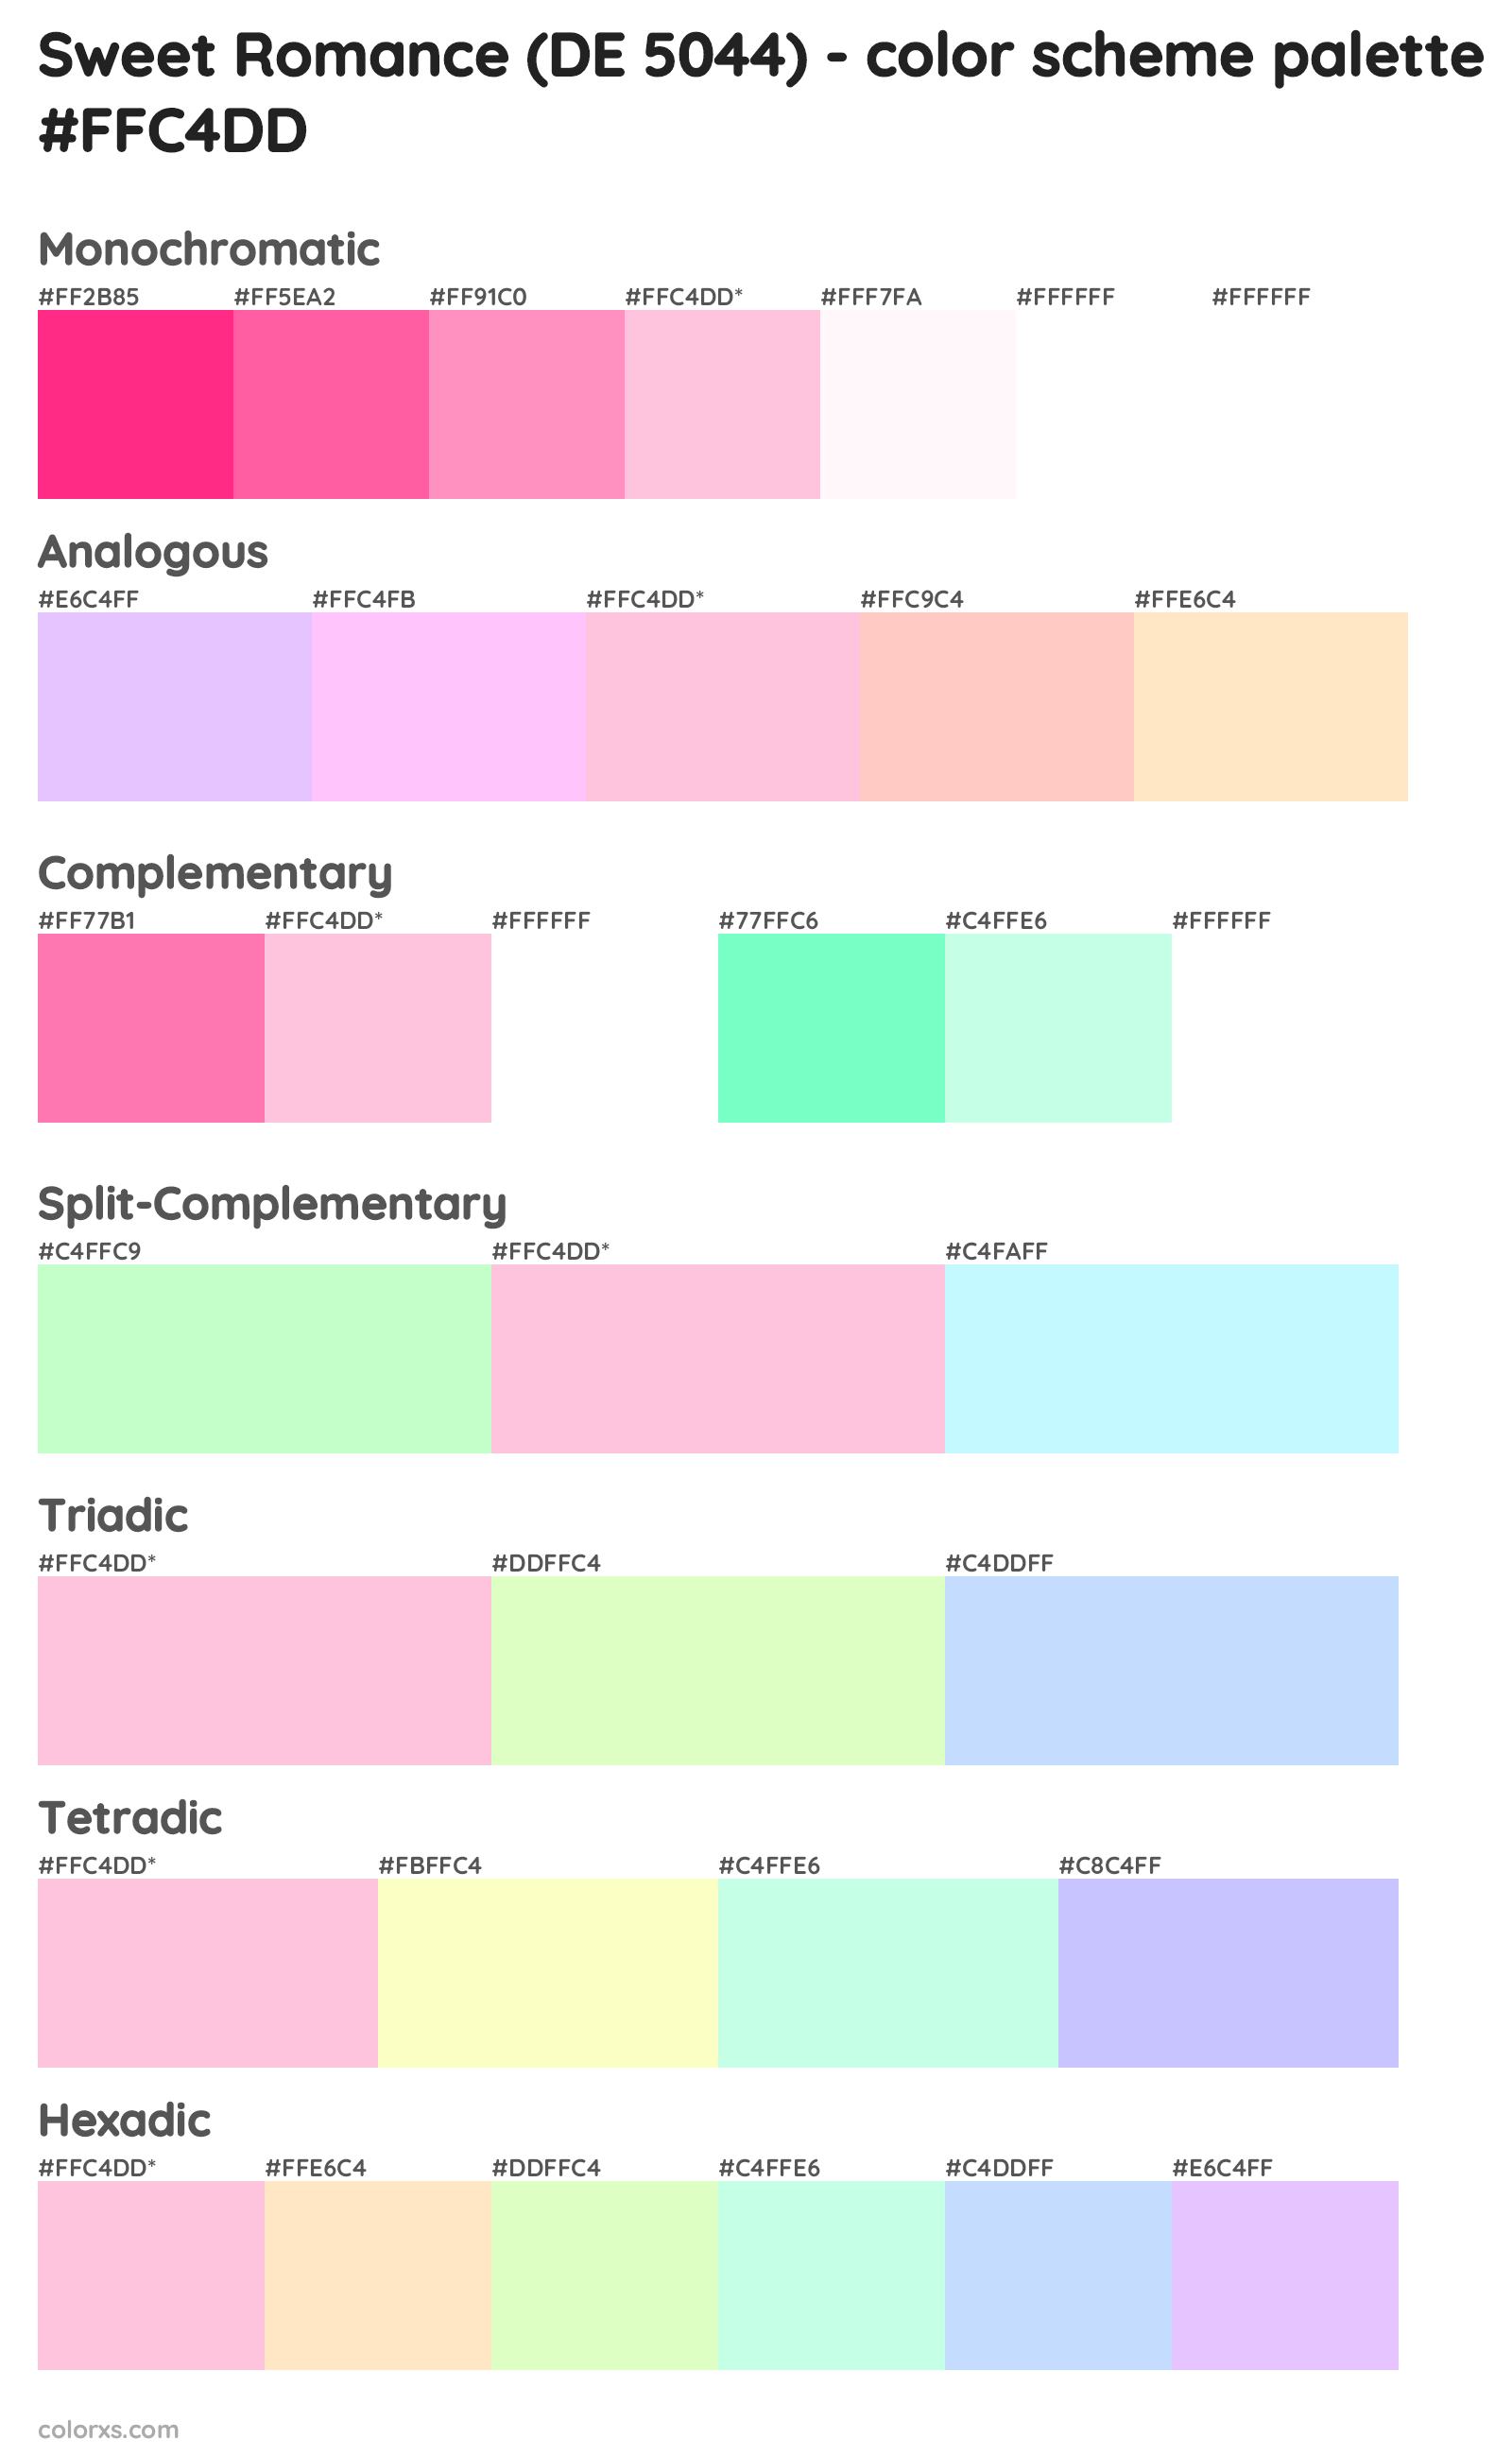 Sweet Romance (DE 5044) Color Scheme Palettes